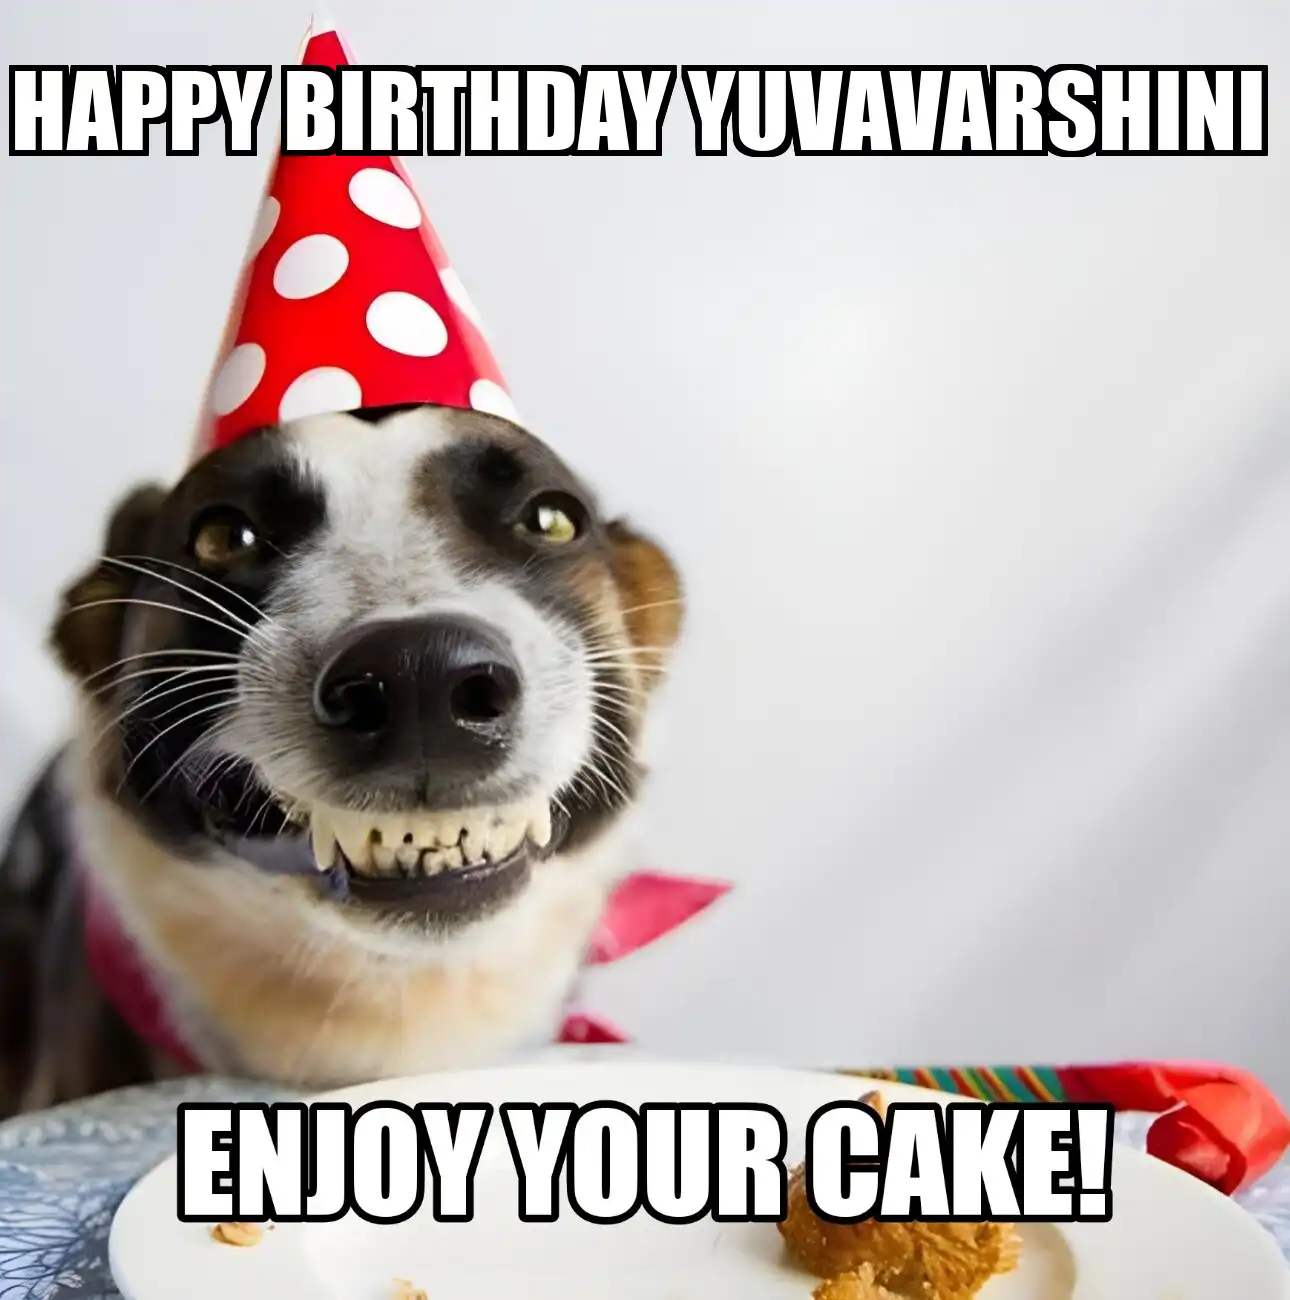 Happy Birthday Yuvavarshini Enjoy Your Cake Dog Meme